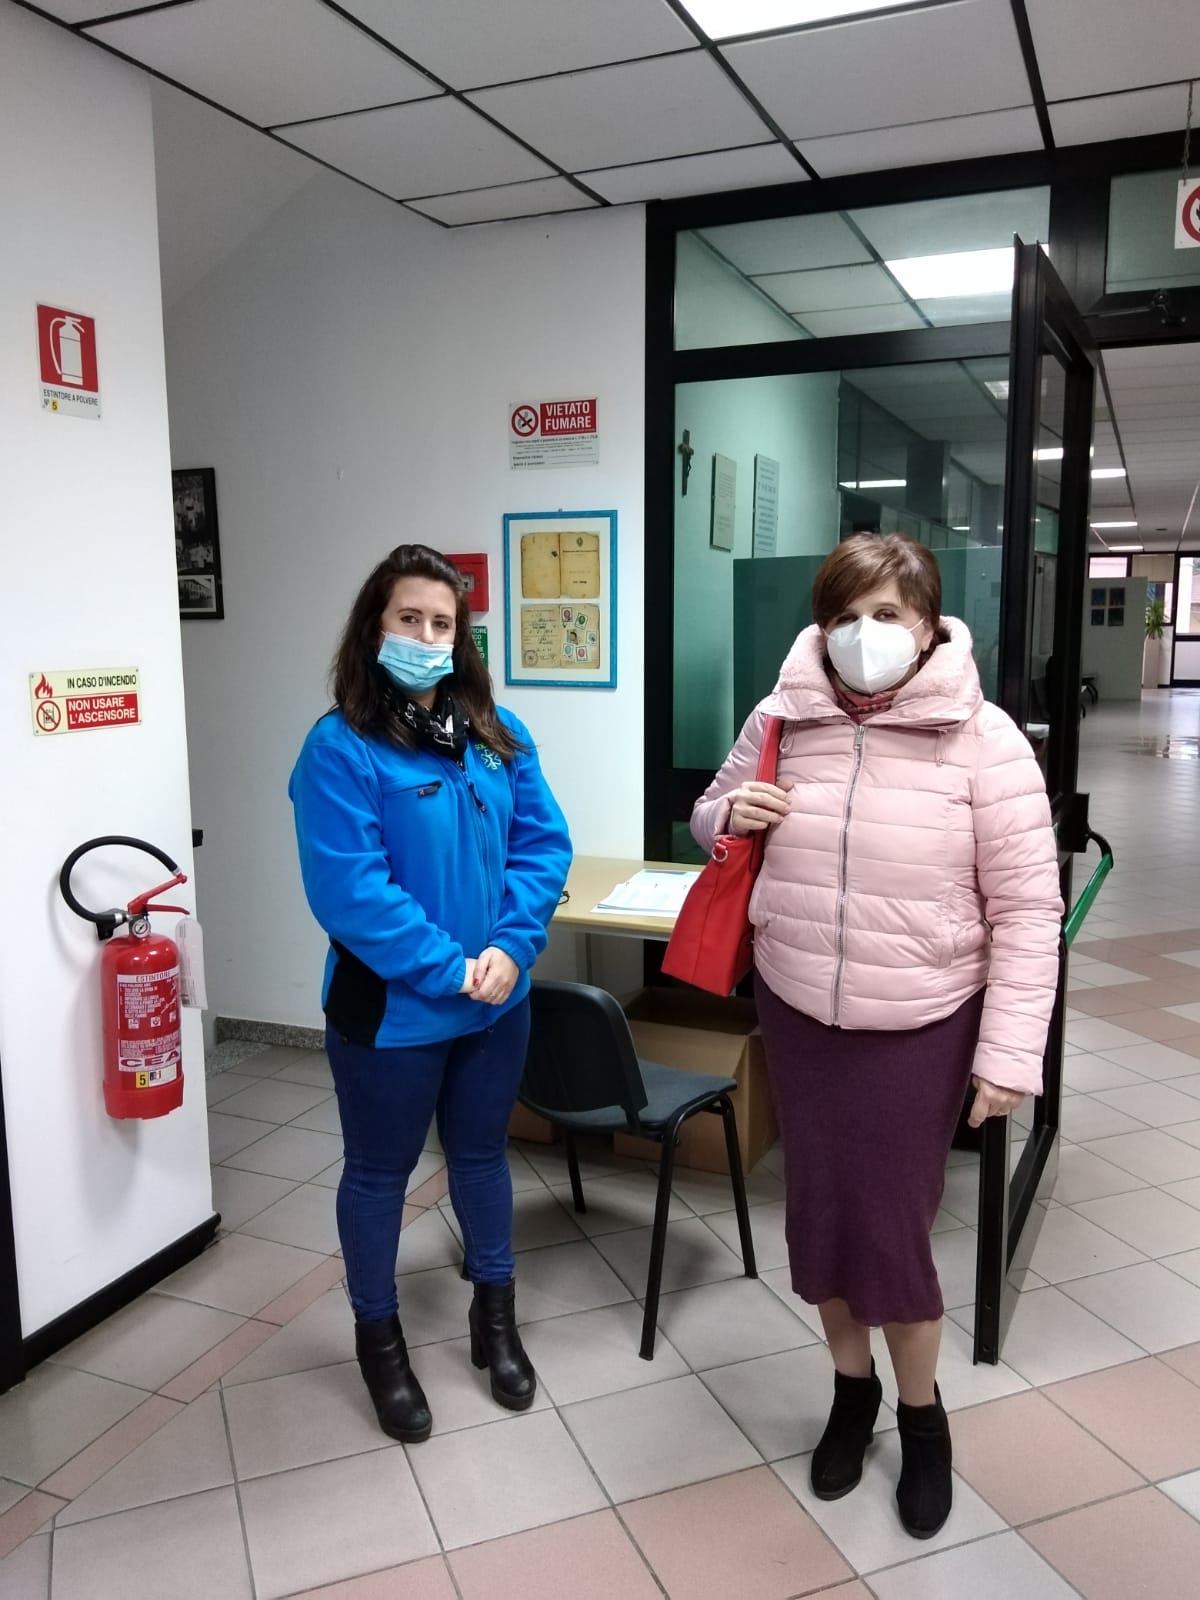 Nuova distribuzione di mascherine a Pieve a Nievole